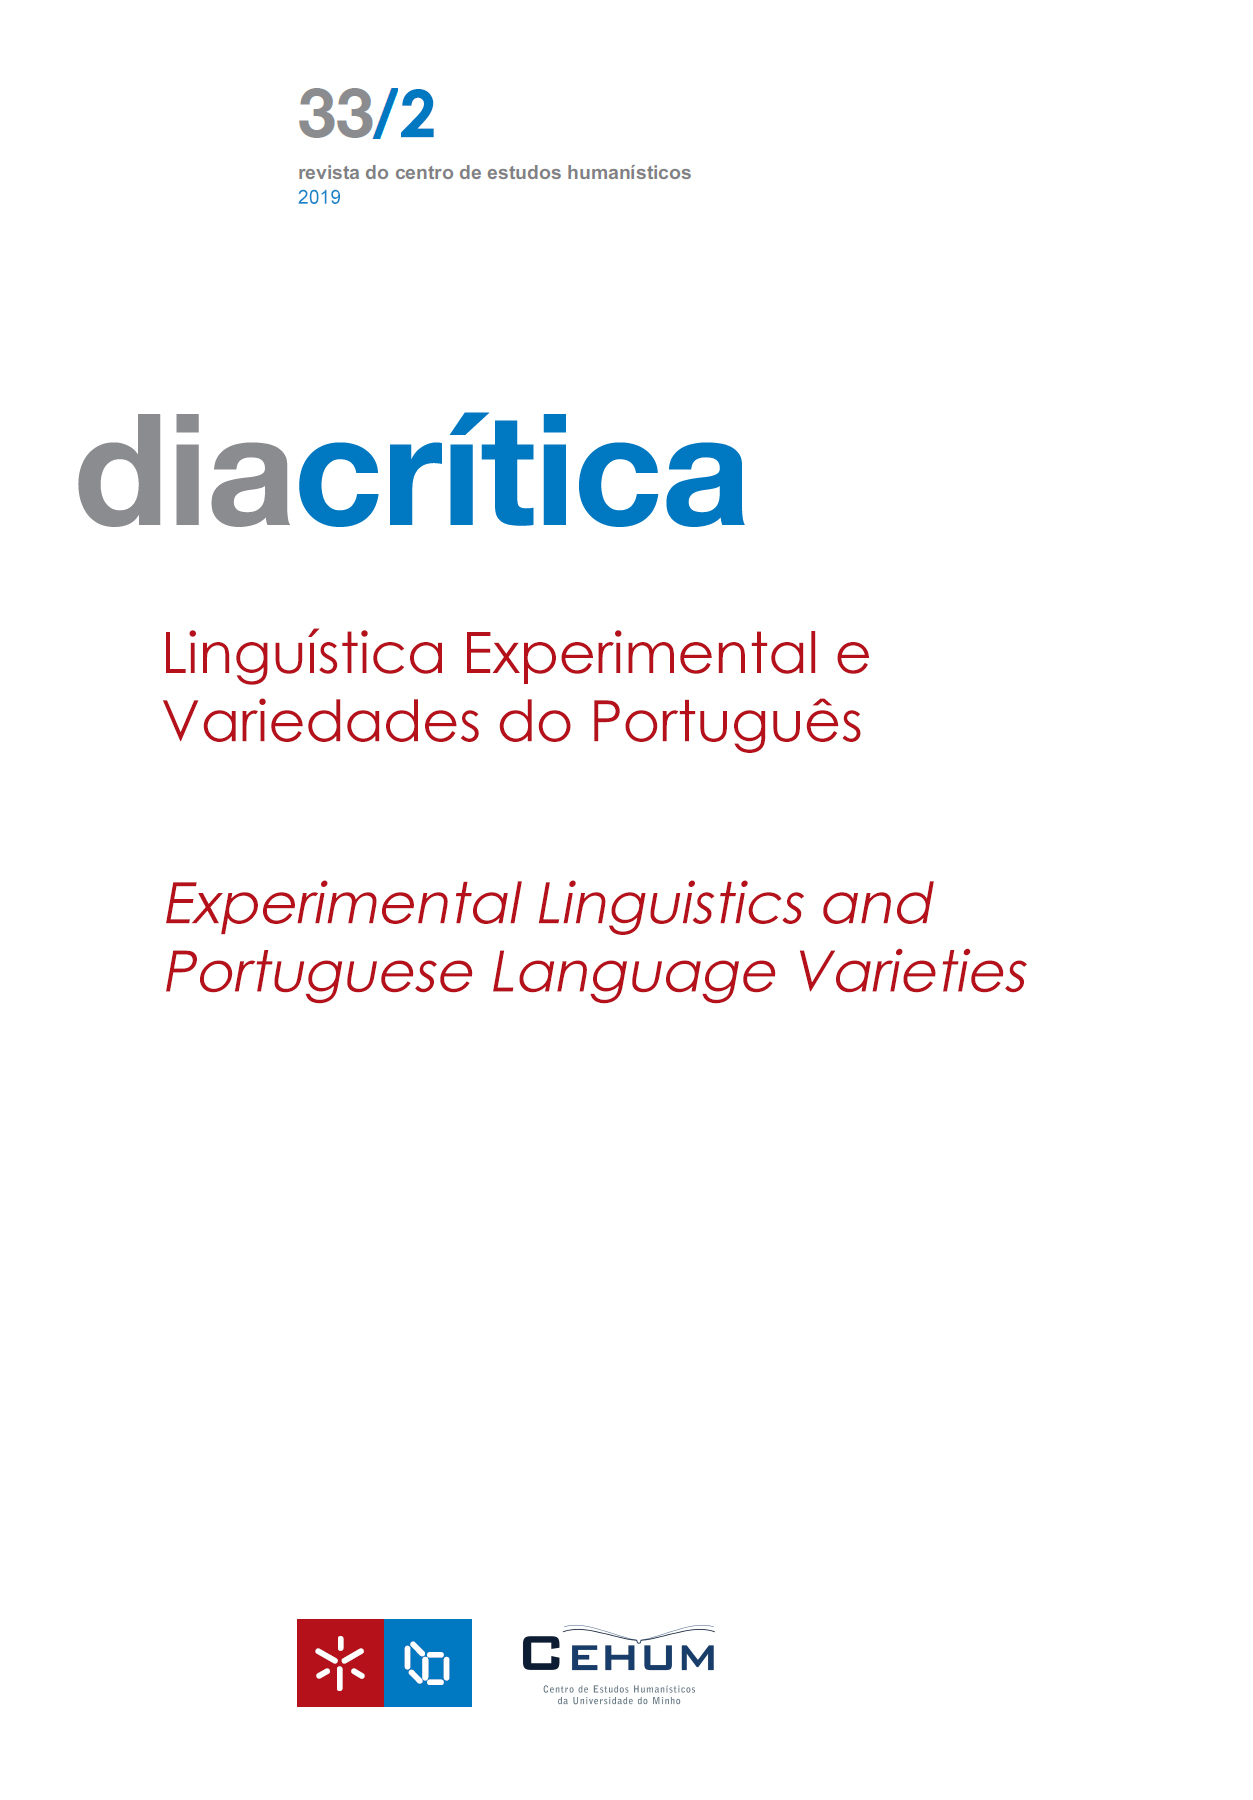 					Ver Vol. 33 N.º 2 (2019): Linguística Experimental e Variedades do Português
				